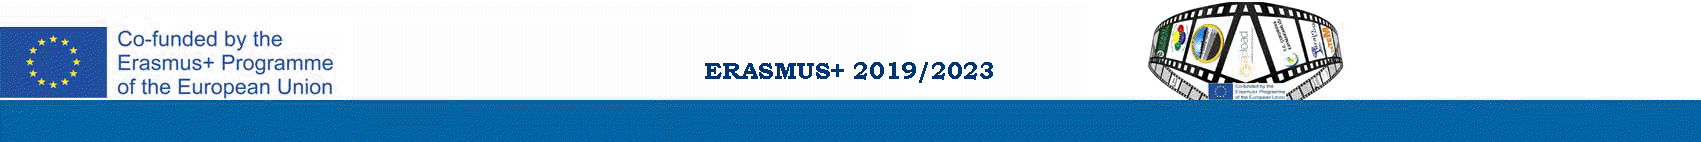 ERASMUS+ 2019/2020